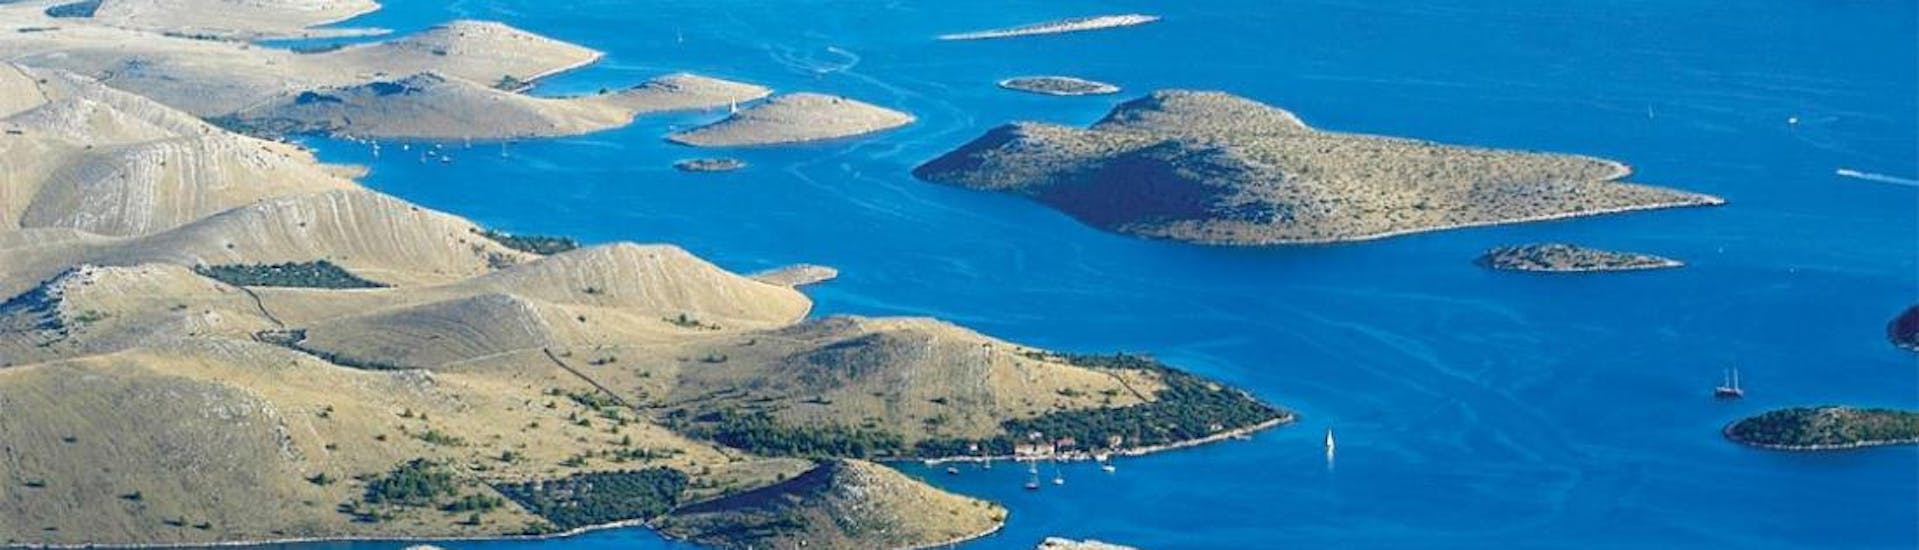 Photo du parc national de Kornati en Croatie, qui peut être visité lors d'une balade en bateau avec Avalon Yachting.